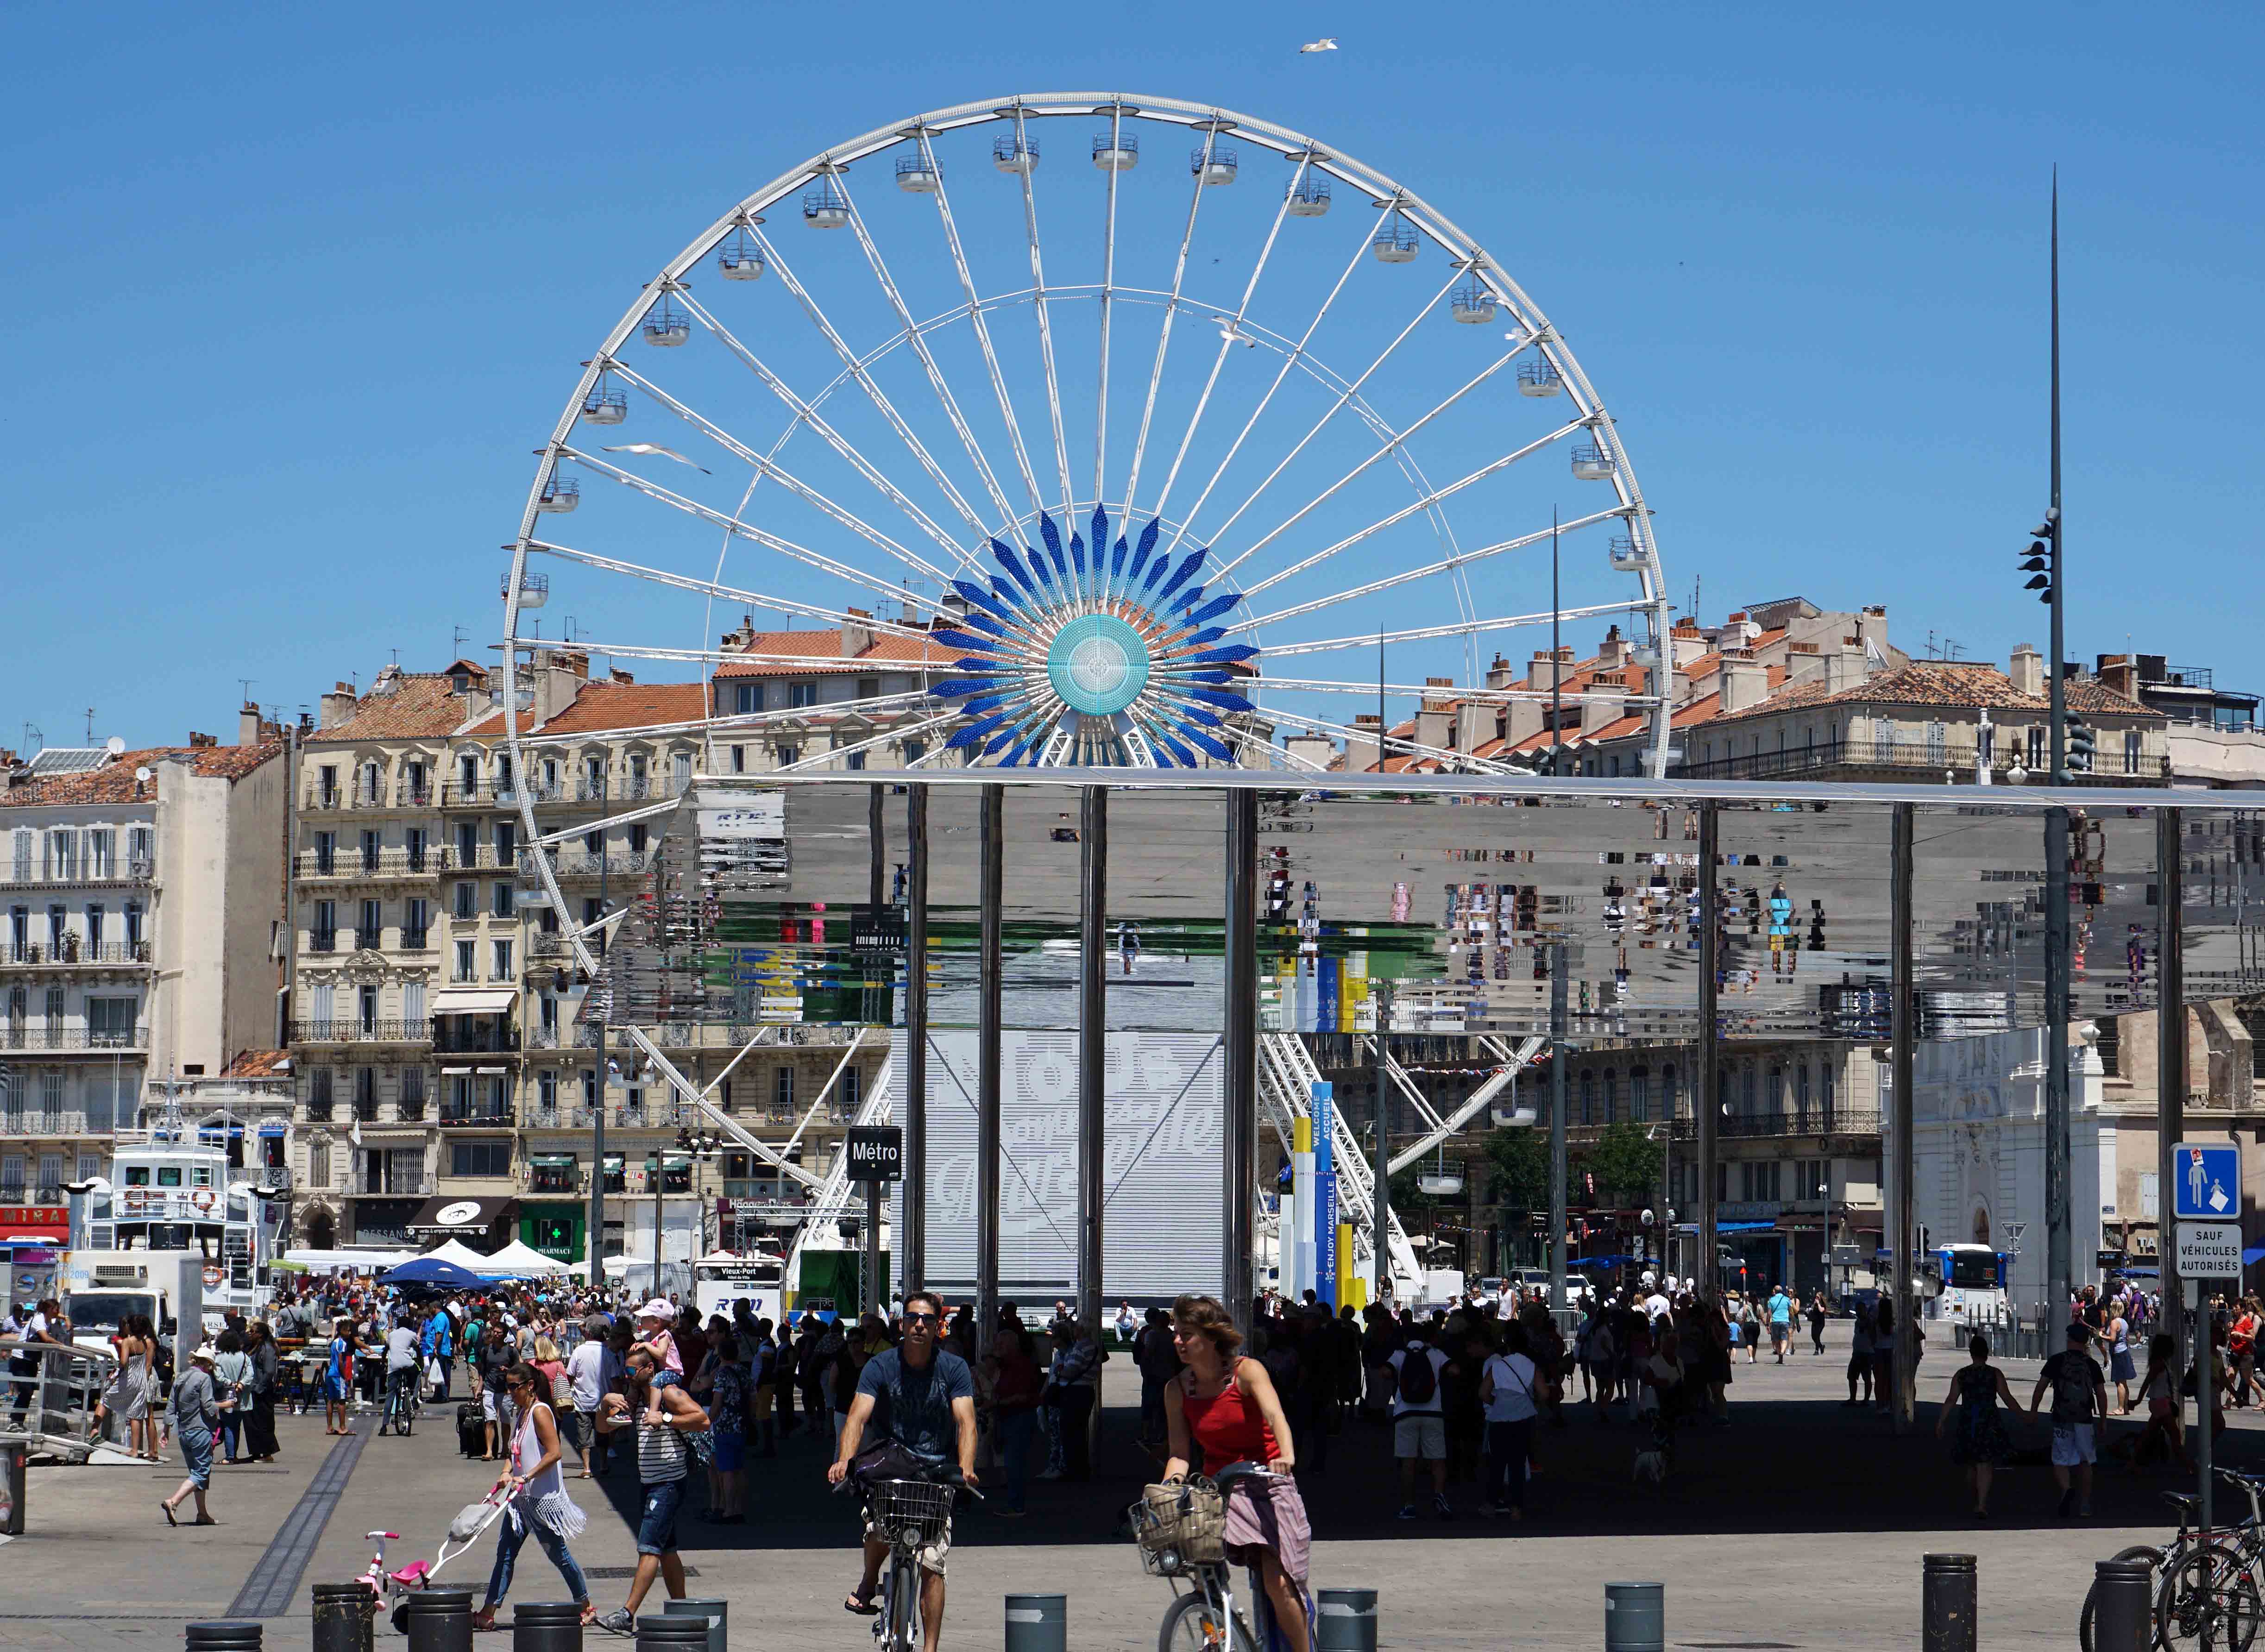 Ratusan wisatawan memadati kawasan wisata vieux port di marseille.